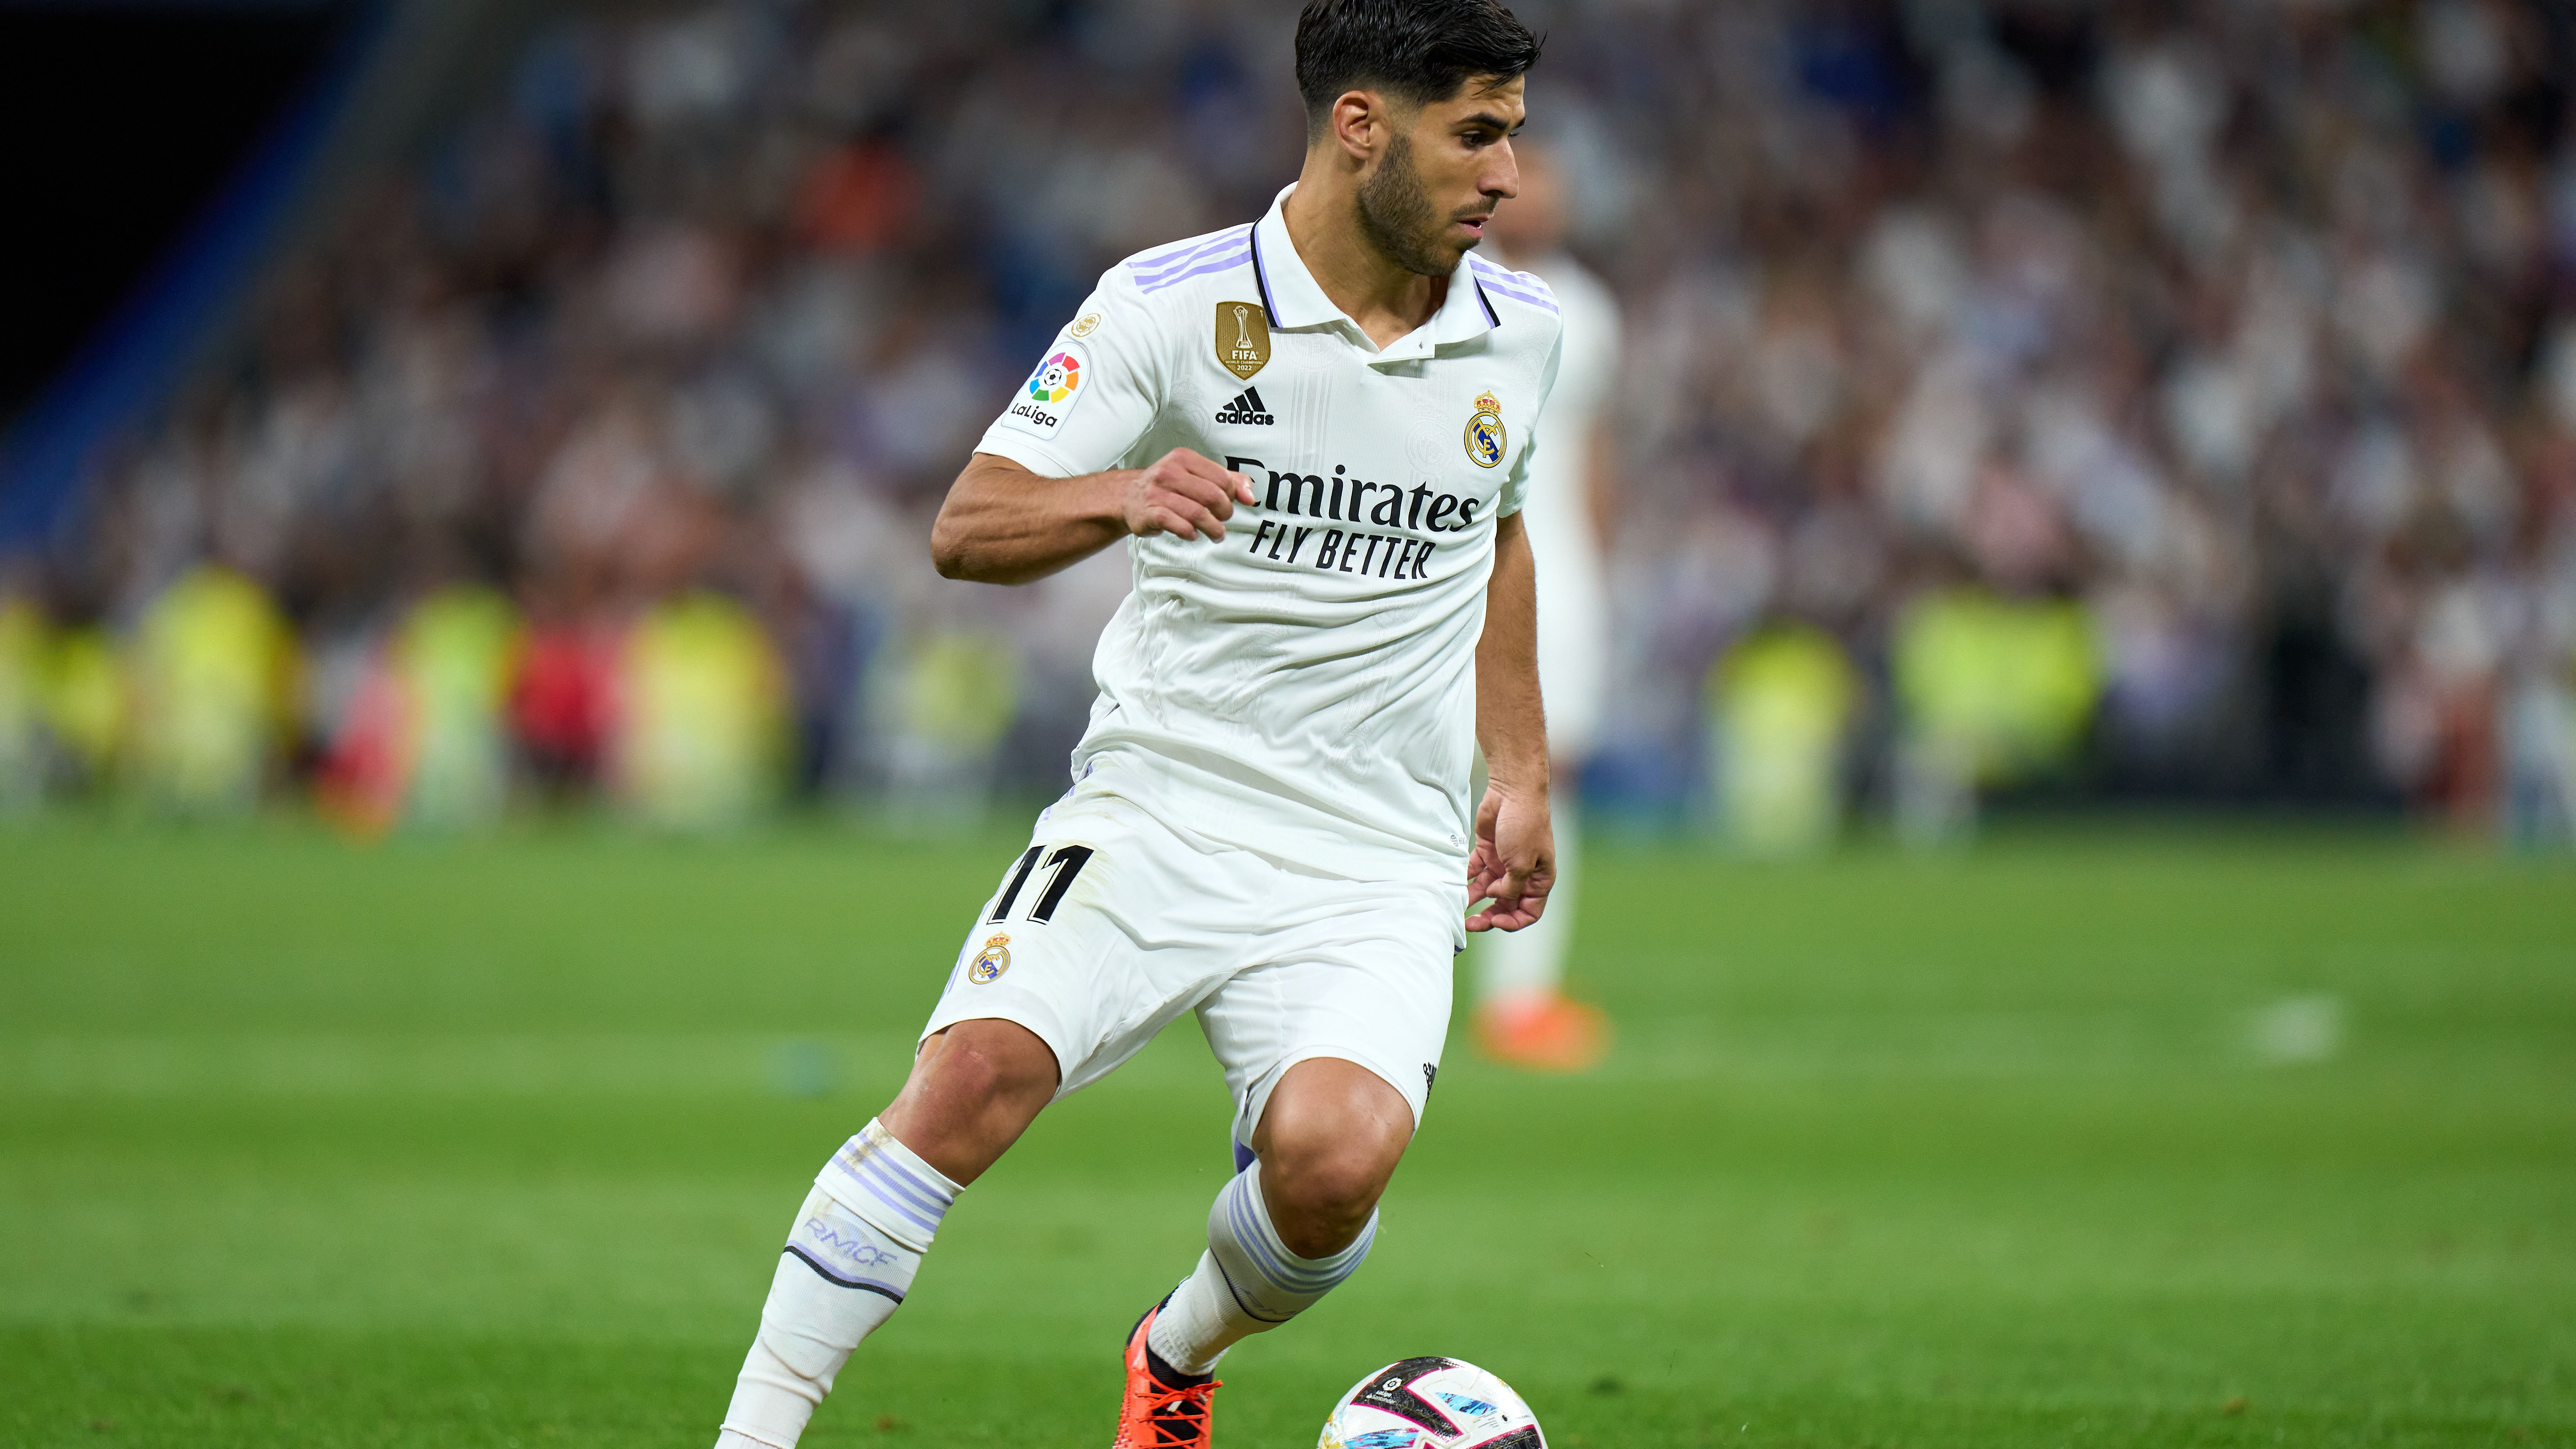 Eldőlt, a Real Madrid játékosa a PSG-nél folytatja – sajtóhír